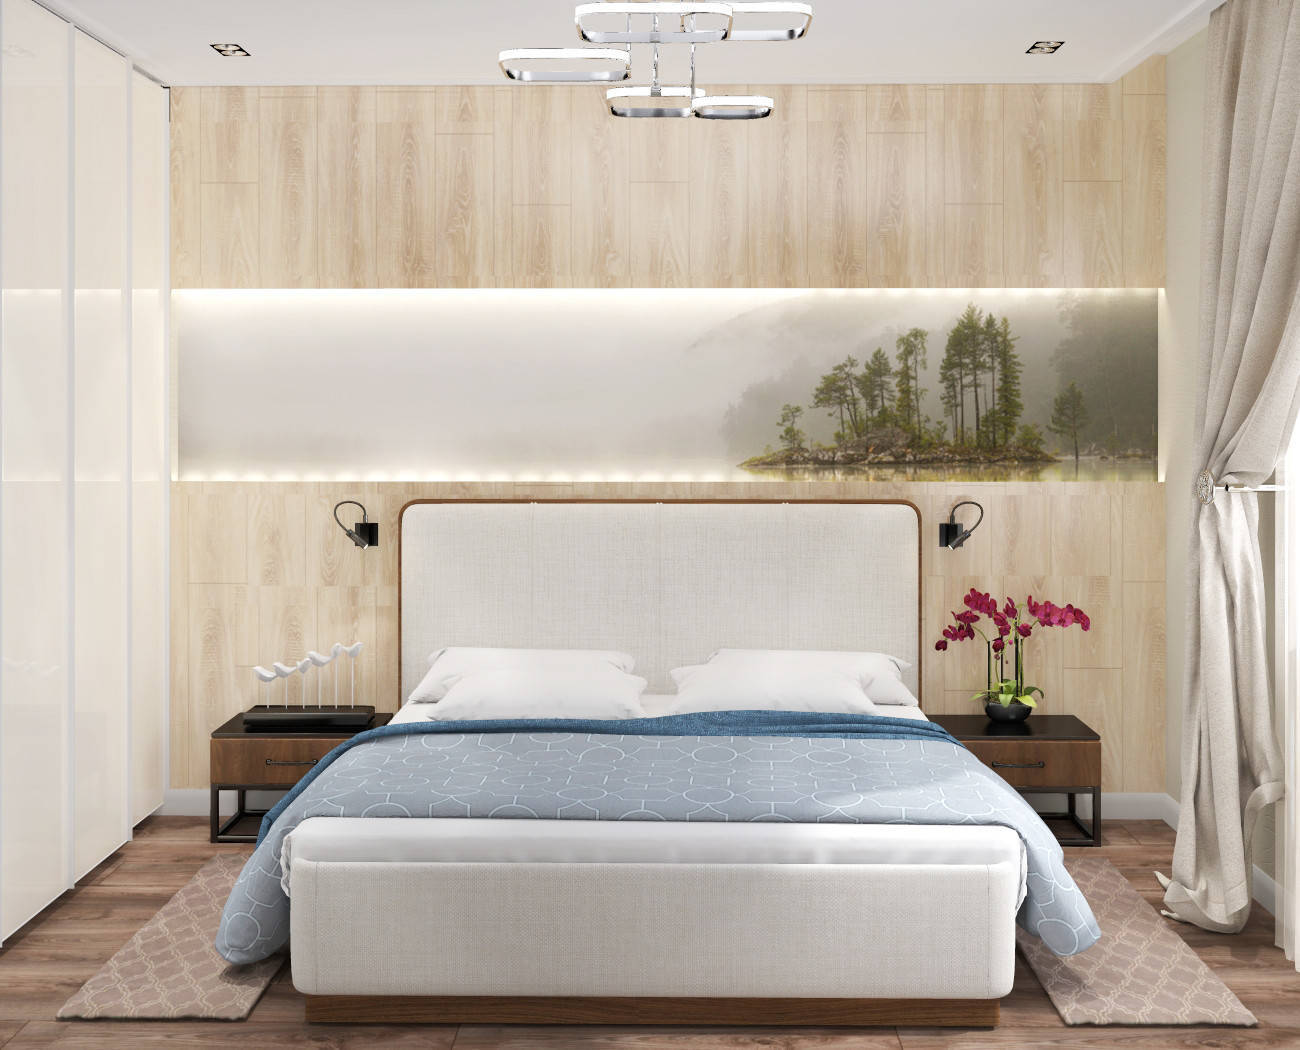 Интерьер спальни cветовыми линиями, рейками с подсветкой, подсветкой настенной, подсветкой светодиодной и светильниками над кроватью в современном стиле